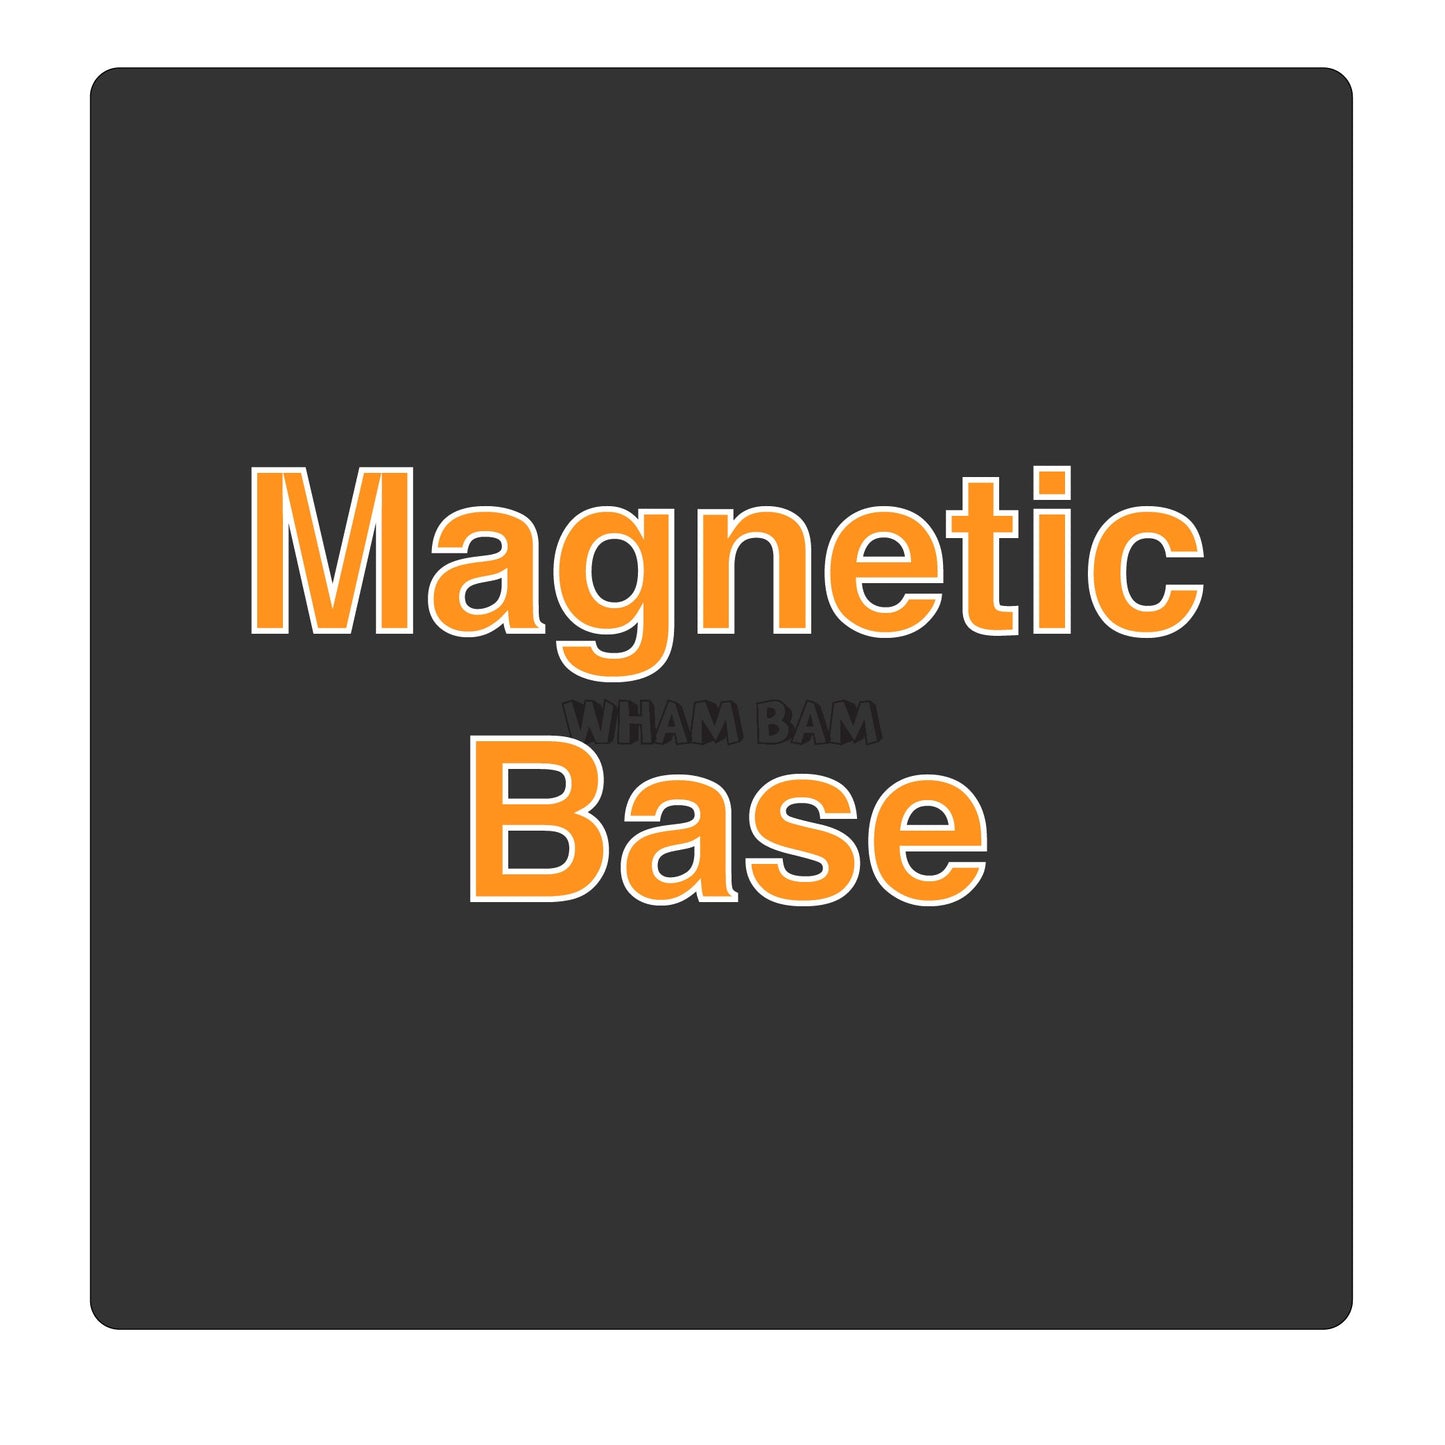 Magnetic Base - 320 x 310 - Creality CR-10S Pro, CR-10S Pro V2 & V3, CR-X